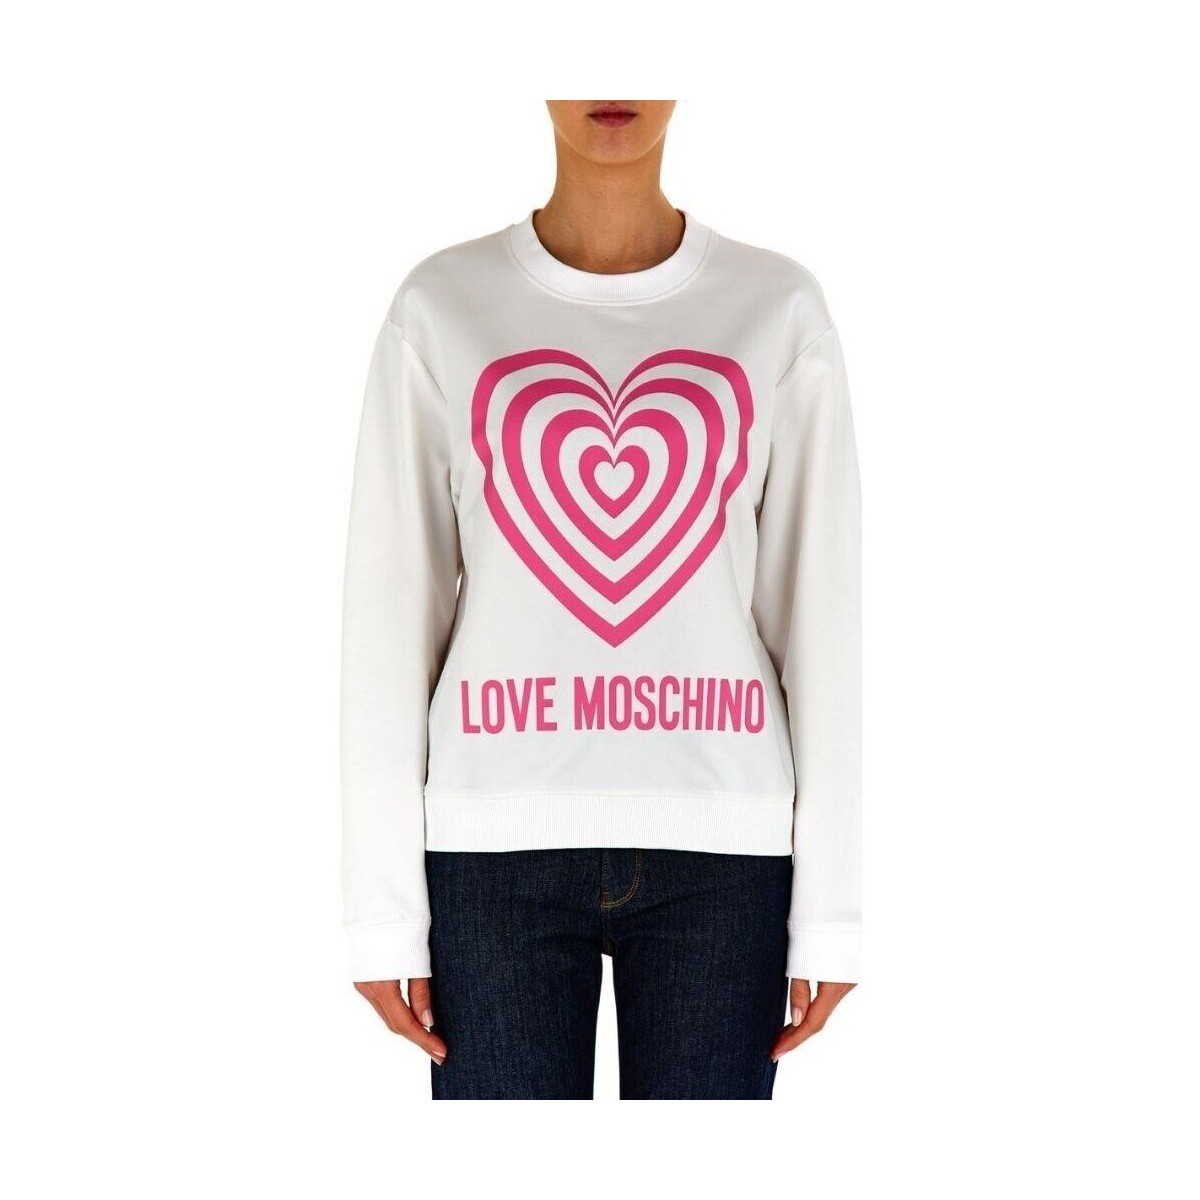 Abbigliamento Donna Felpe Love Moschino W6306 56 E2246 Bianco